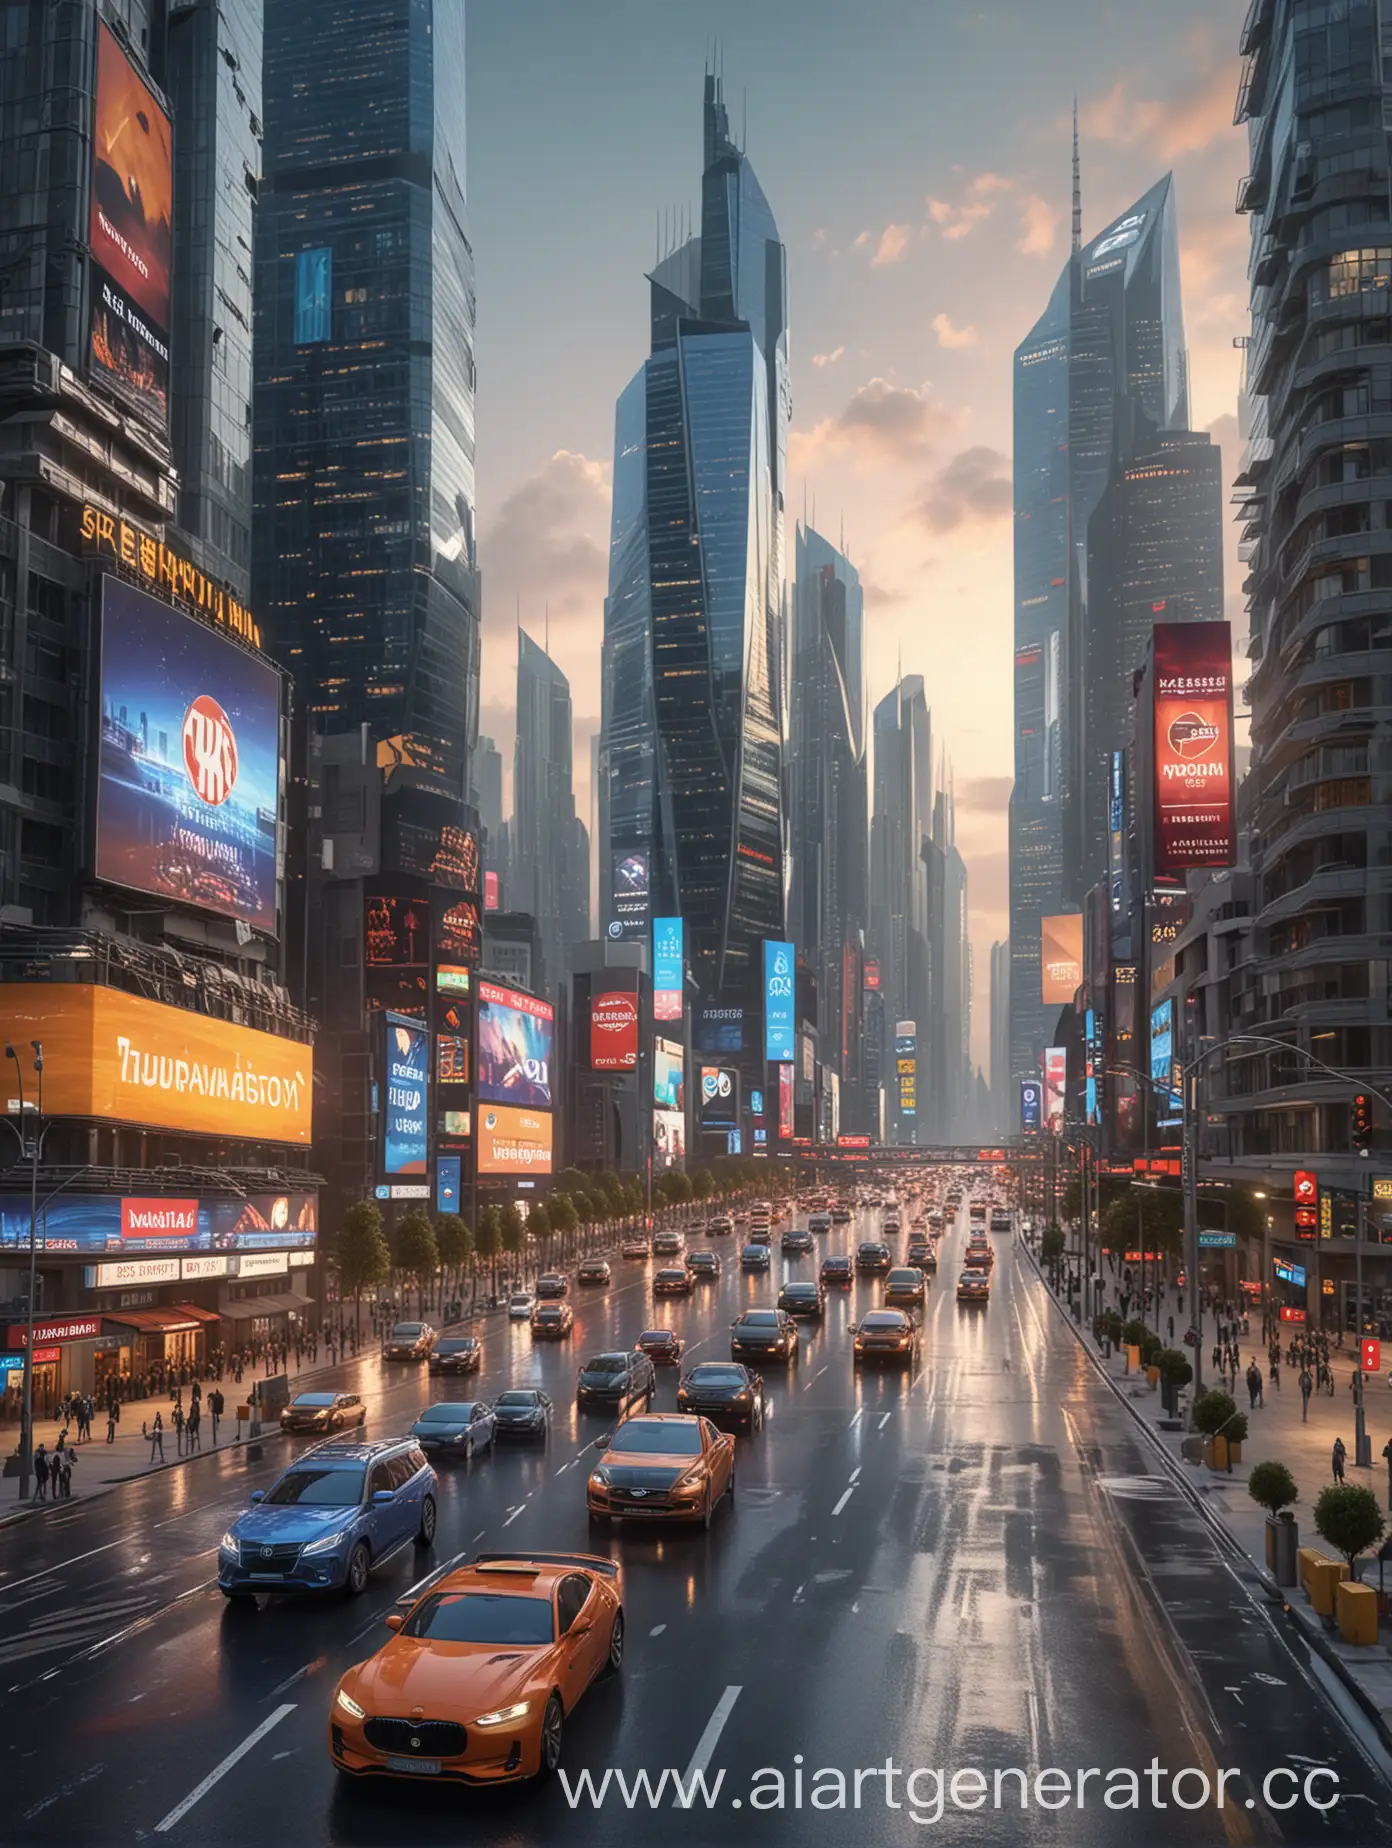     На картинке можно изобразить современный городской пейзаж с высокими небоскребами, светящимися рекламными щитами и множеством автомобилей на дорогах. В центре картинки можно разместить логотип TARONAVIGATOR, который будет выделяться на фоне яркого и динамичного городского фона, фотография, реалистично, 4k